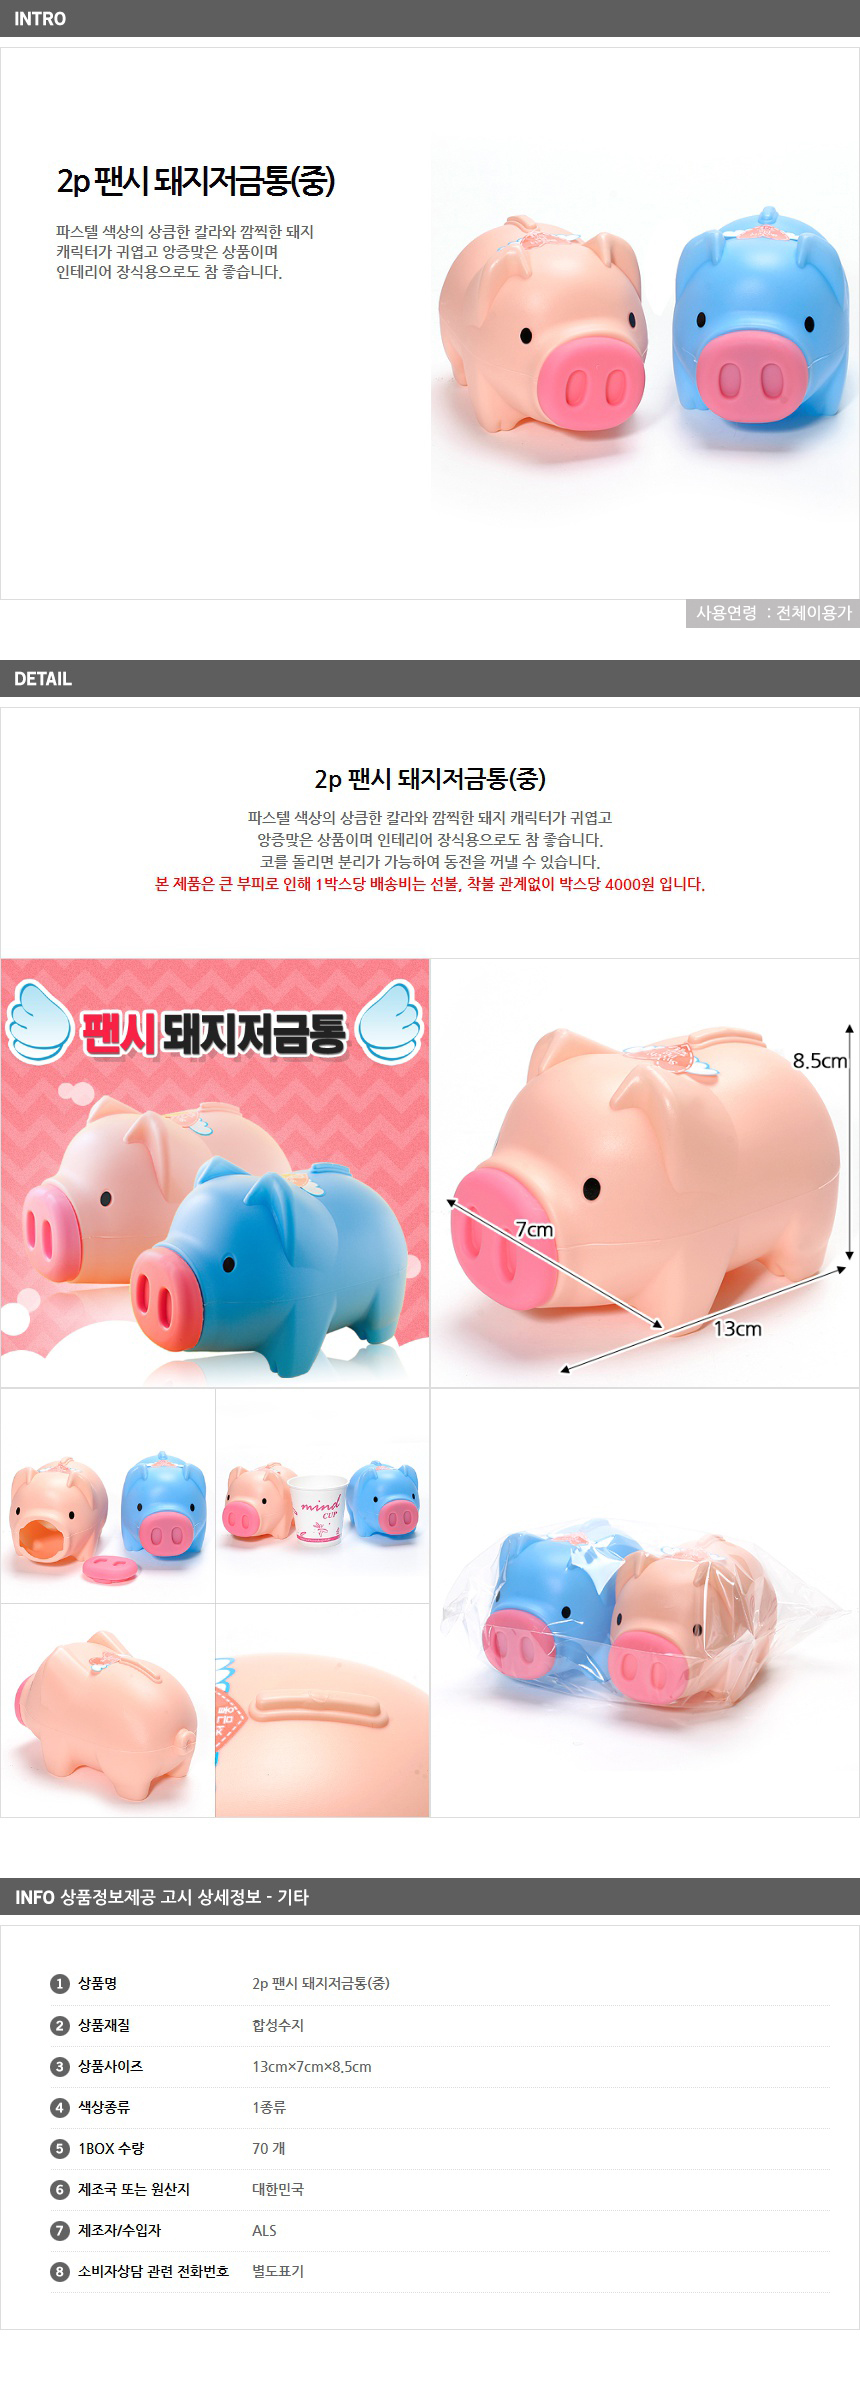 2p 팬시 돼지저금통(중) / 수협은행 홍보 사은품 인쇄